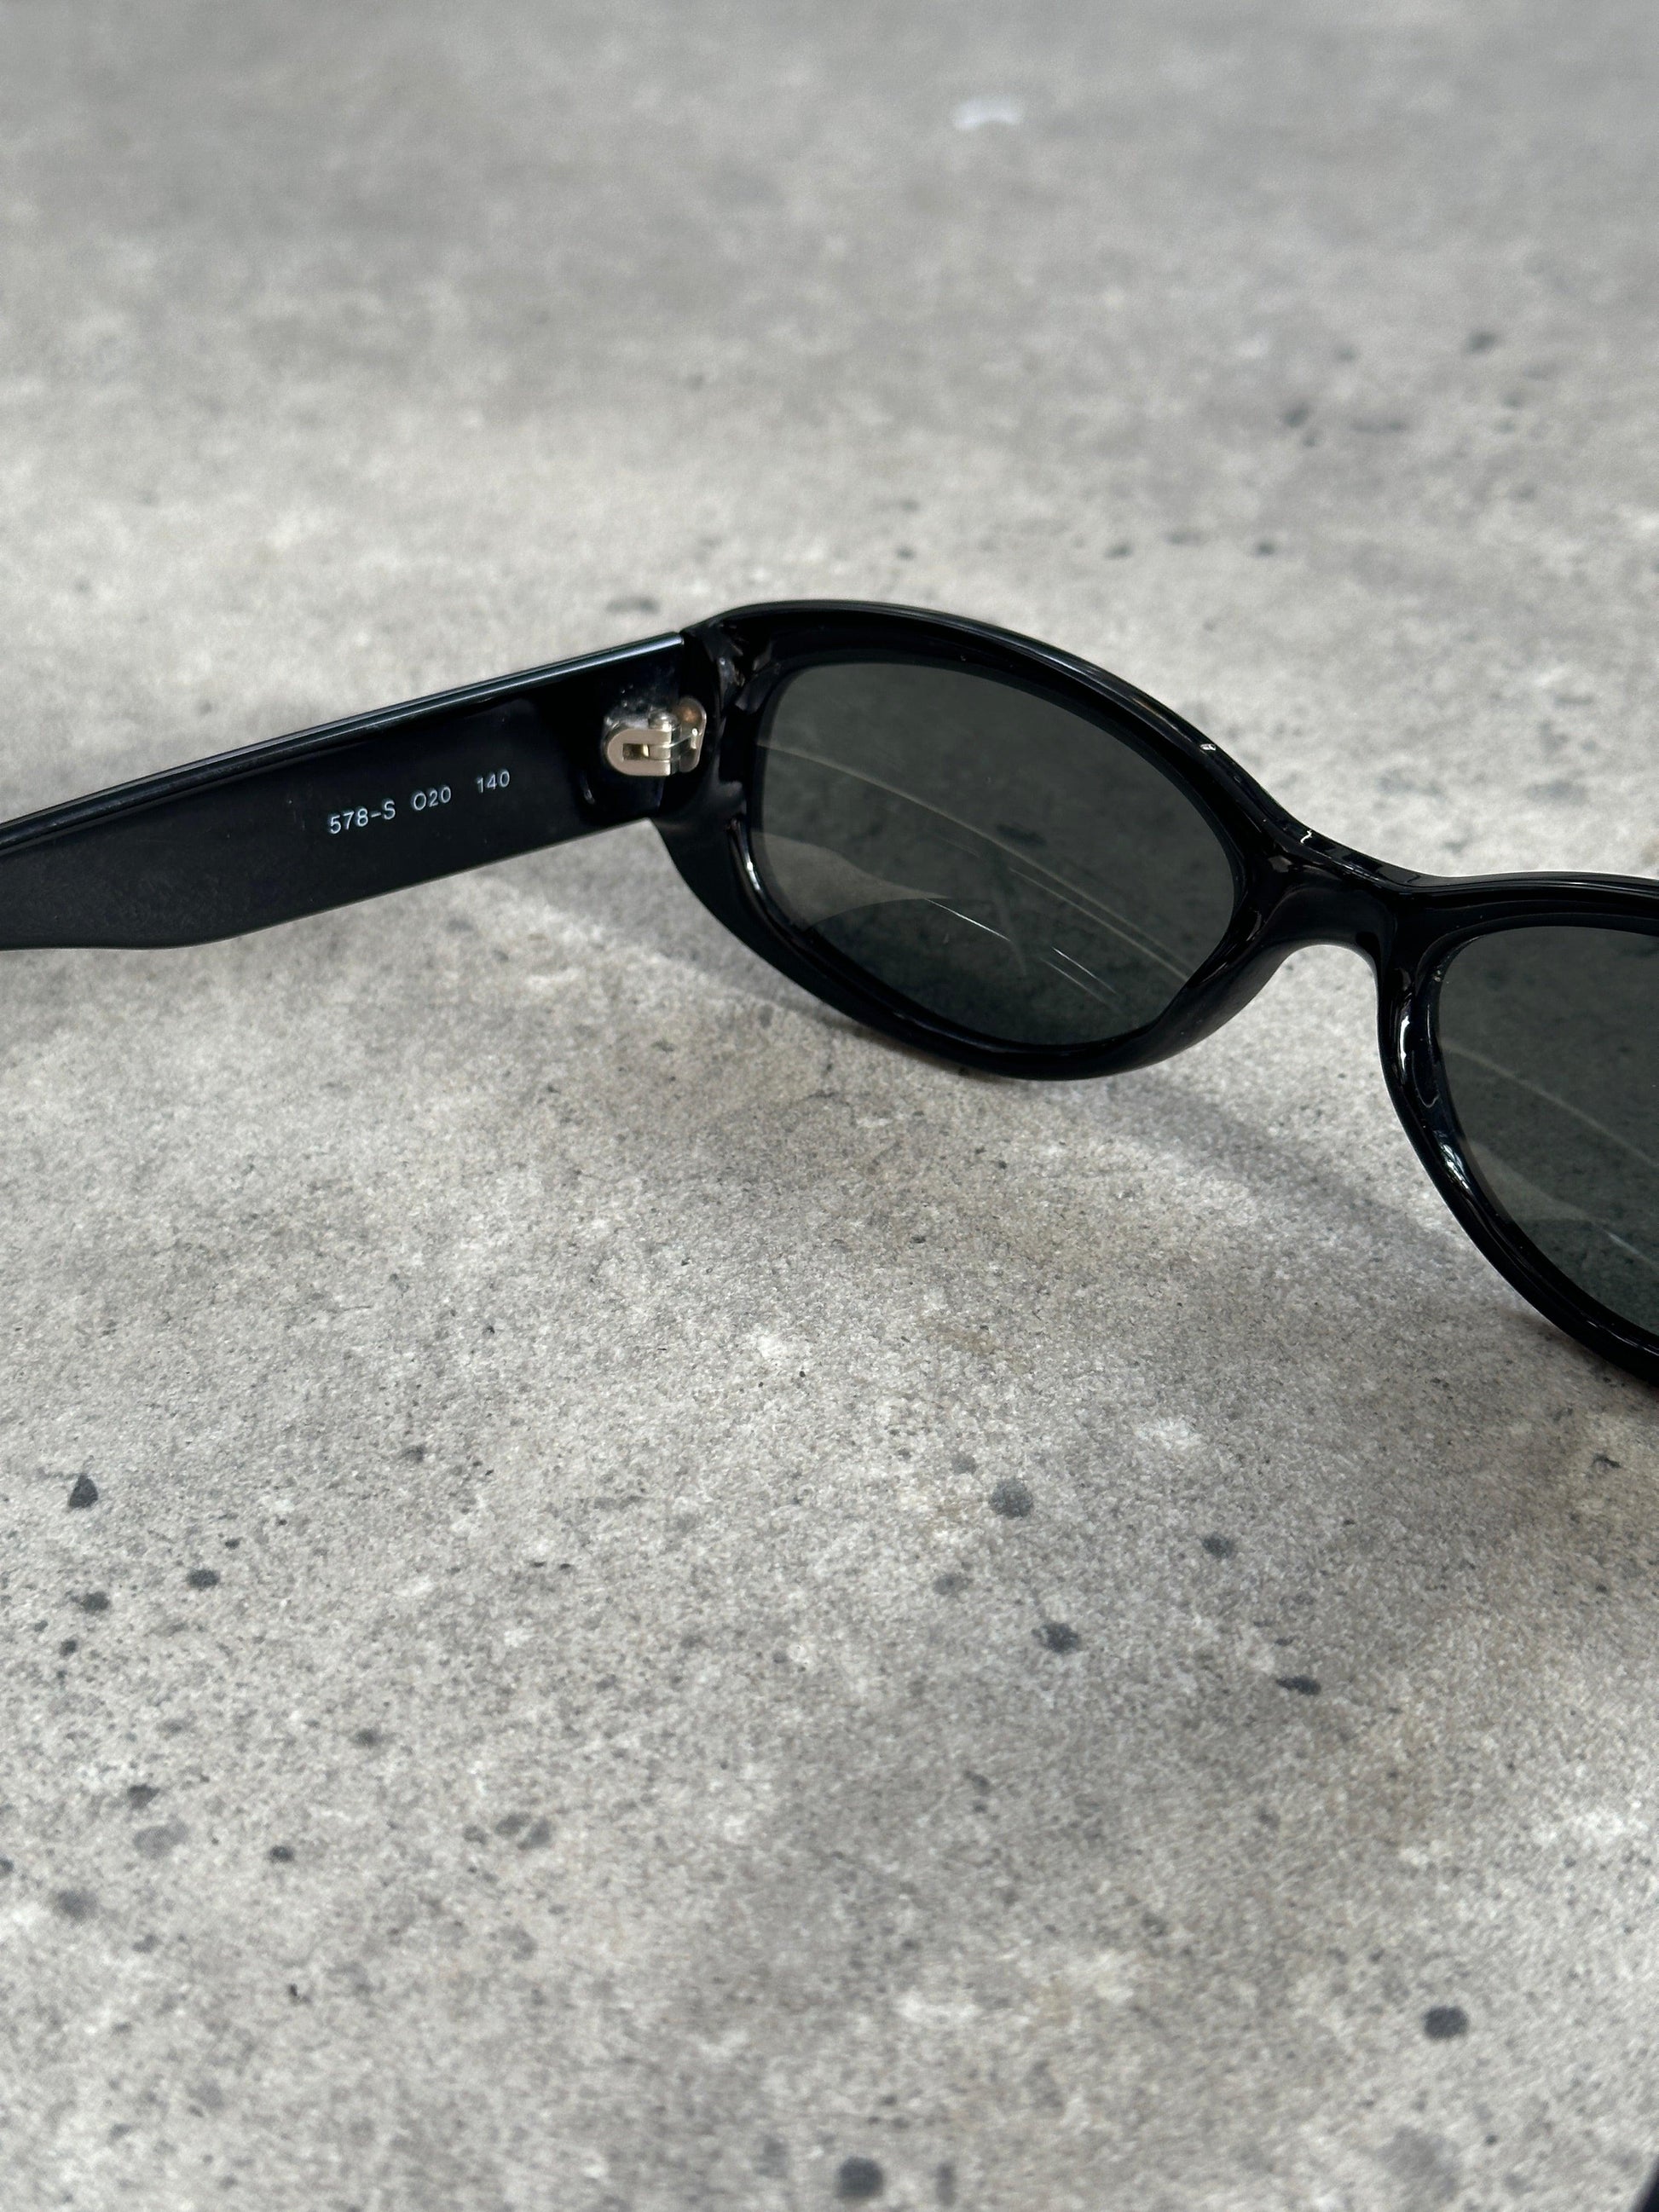 Emporio Armani Oval Sunglasses - Known Source